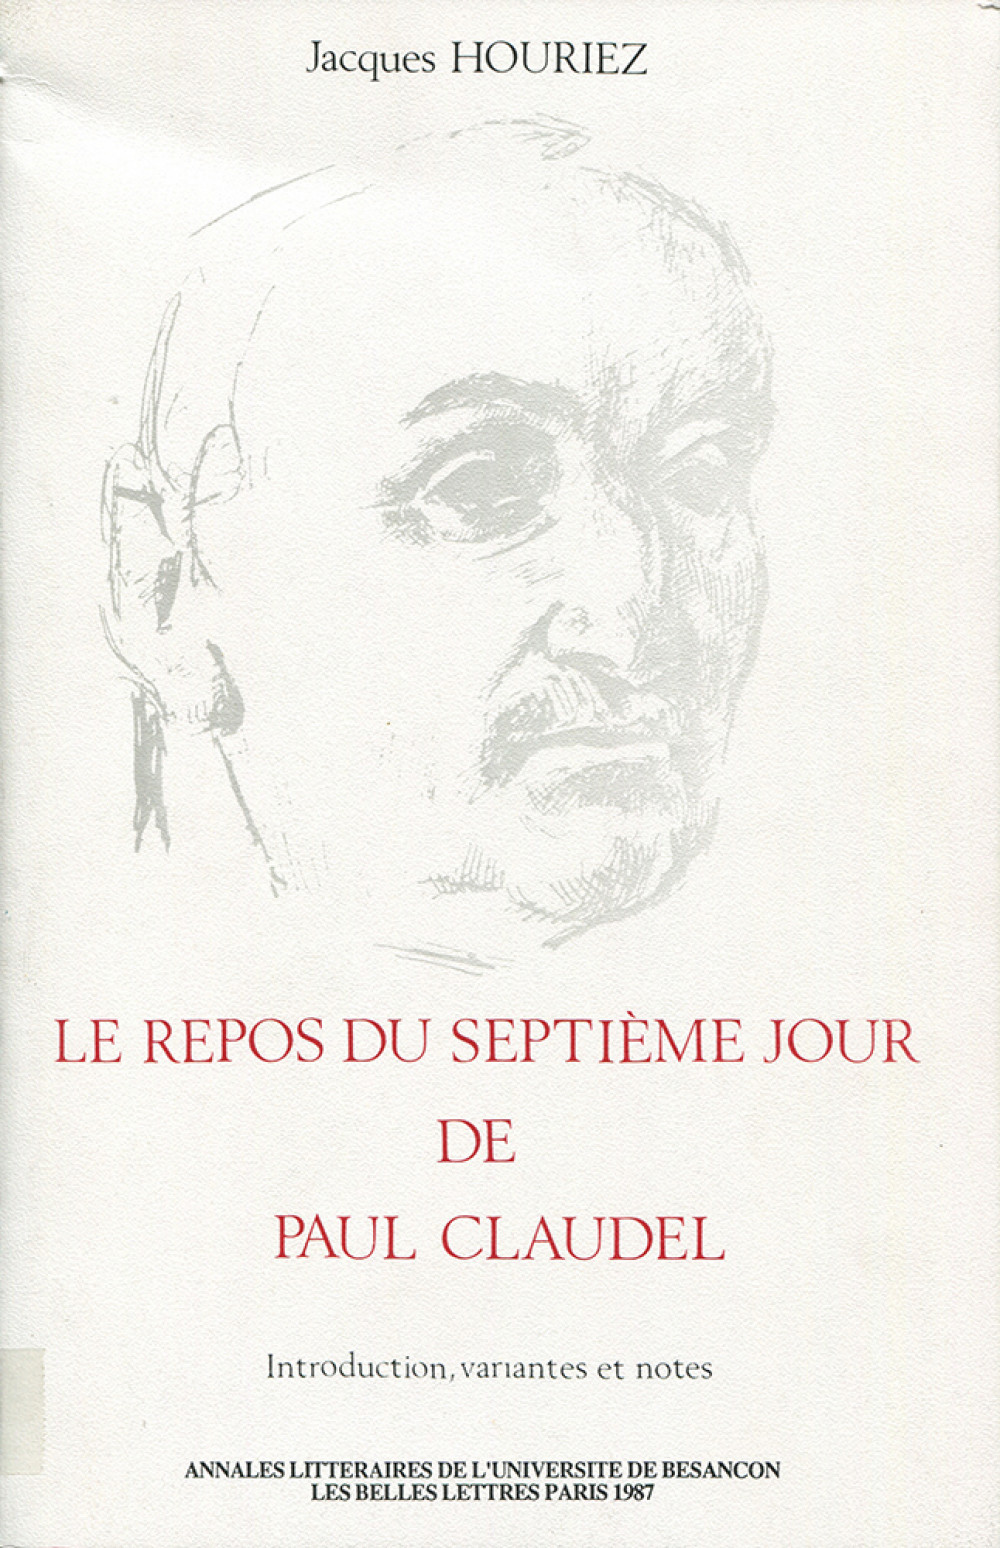 Le repos du 7ème jour de Paul Claudel